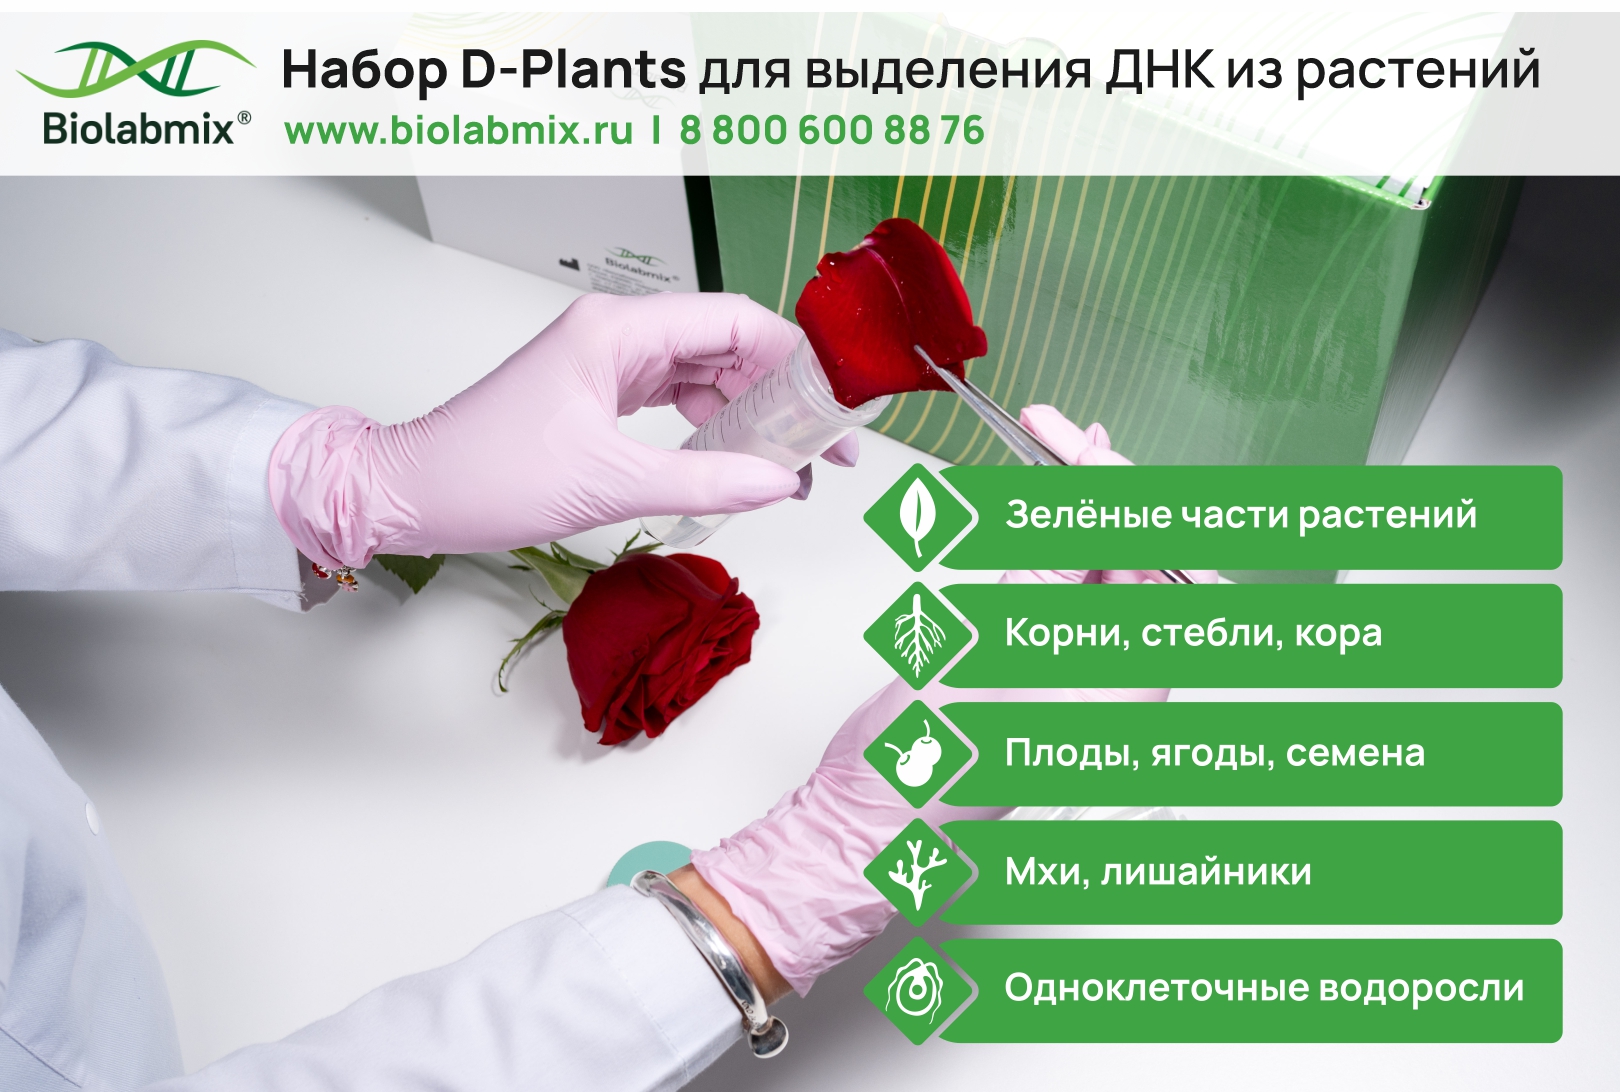 مجموعة D-Plants لاستخراج الحمض النووي من النباتات